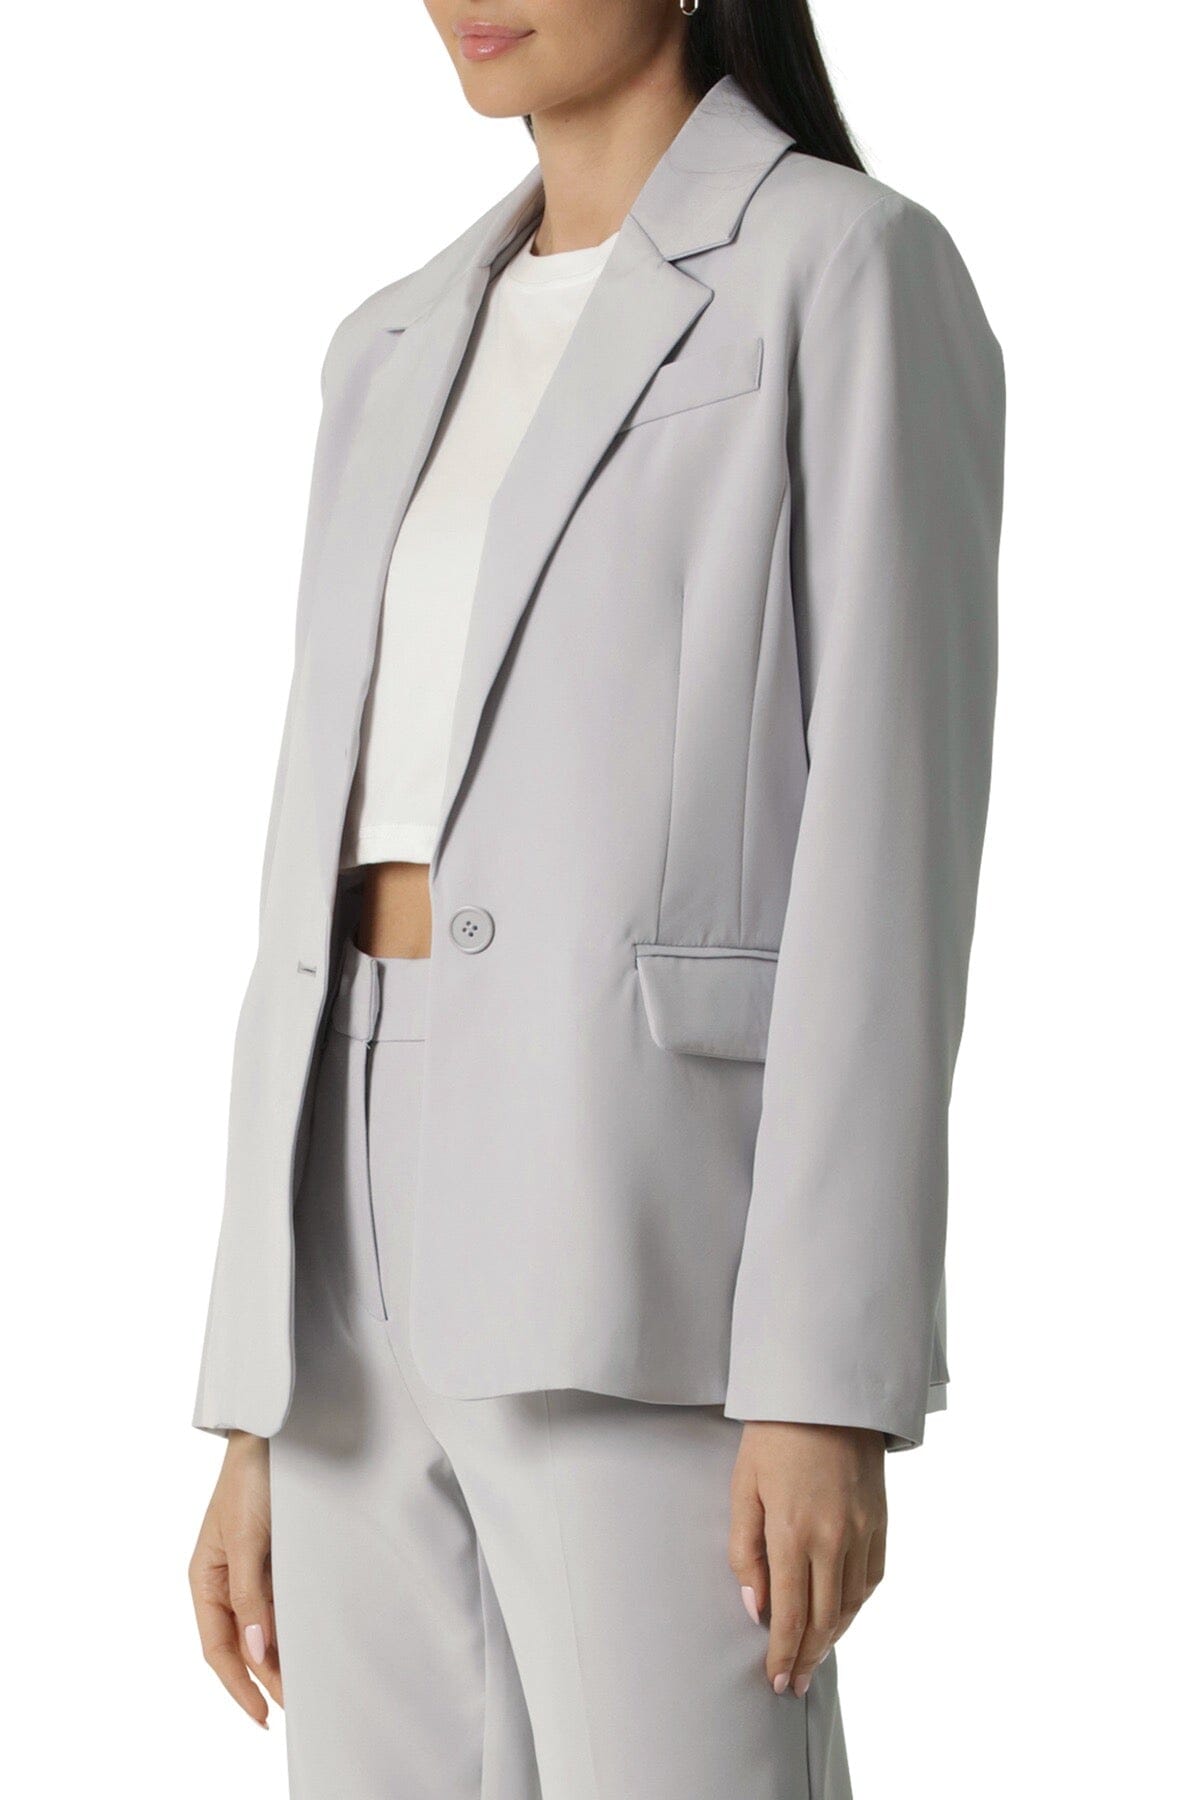 Single Button Stretch Suit Blazer Jacket Coat Sky Blue - Figure Flattering Cute Casual Workwear Blazers for Women